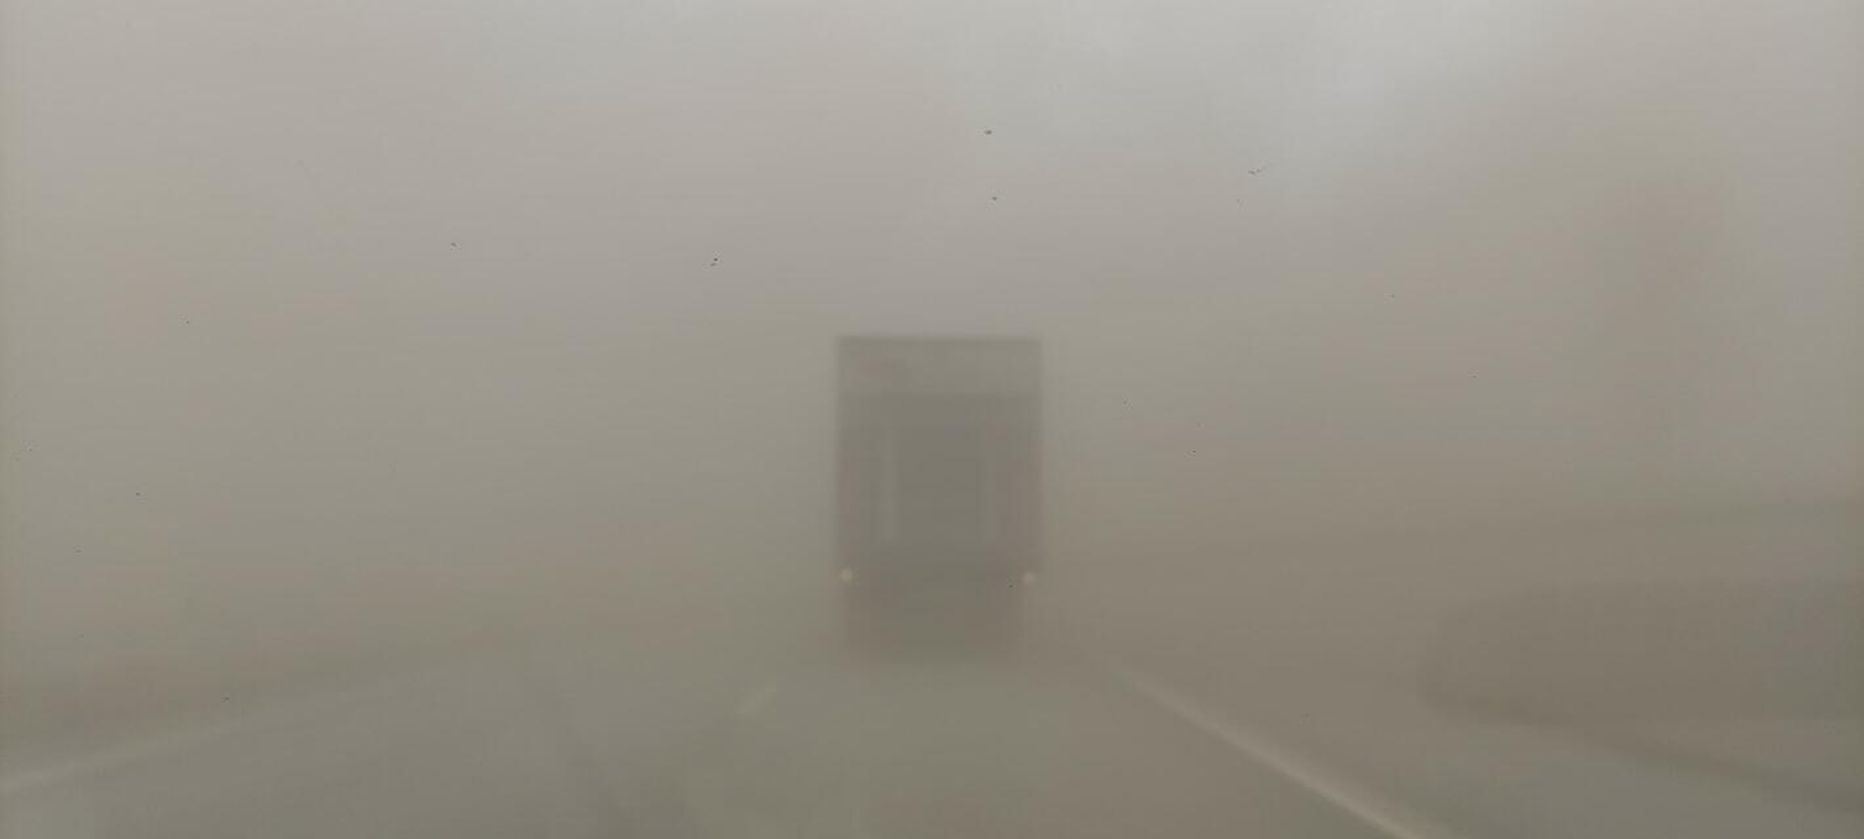 Видимость на шоссе была близка к нулю. К счастью, насколько известно, облако пыли не стало причиной ДТП.